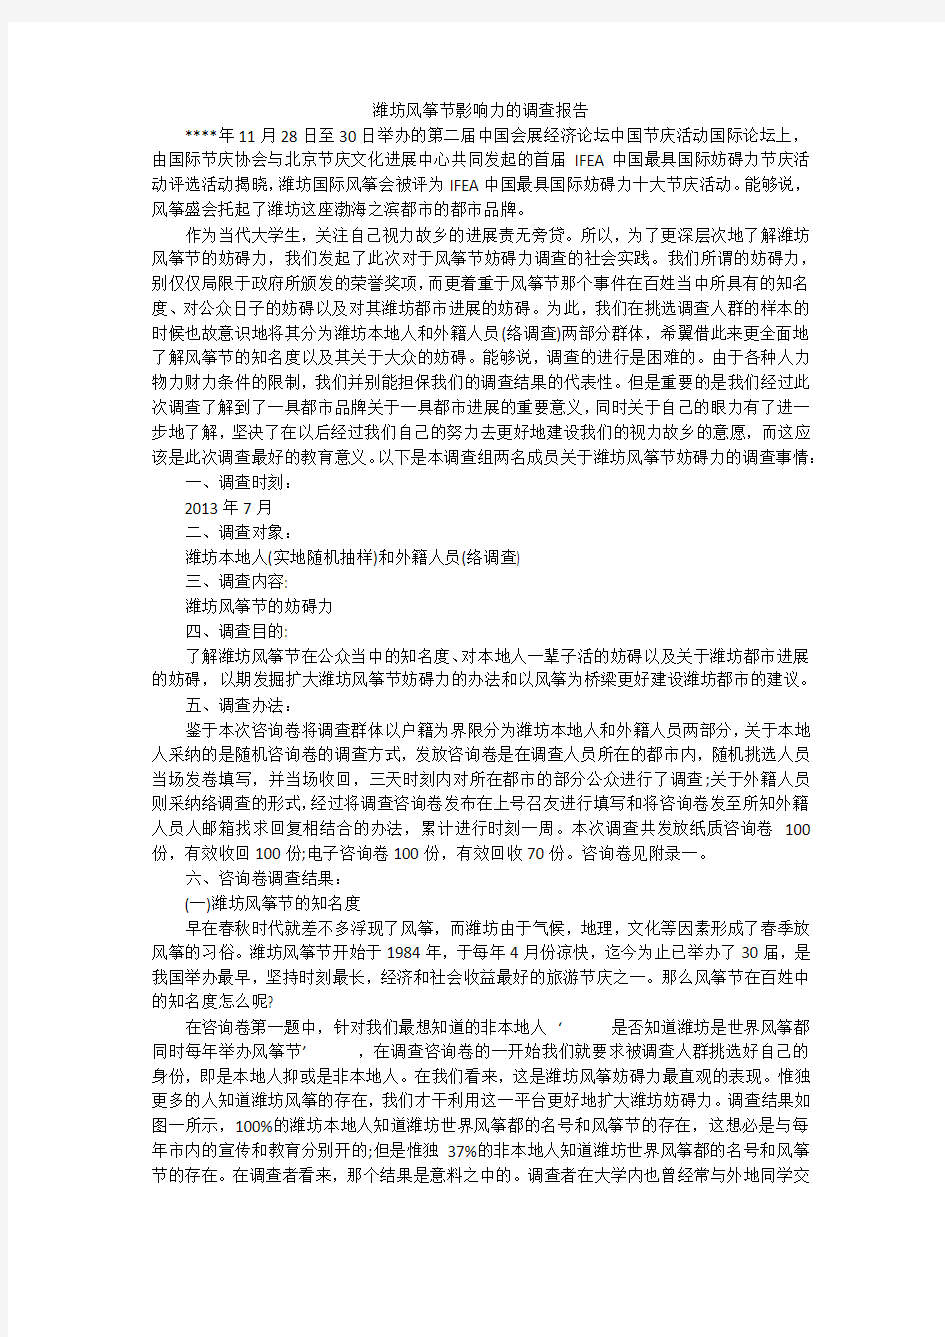 潍坊风筝节影响力的调查报告